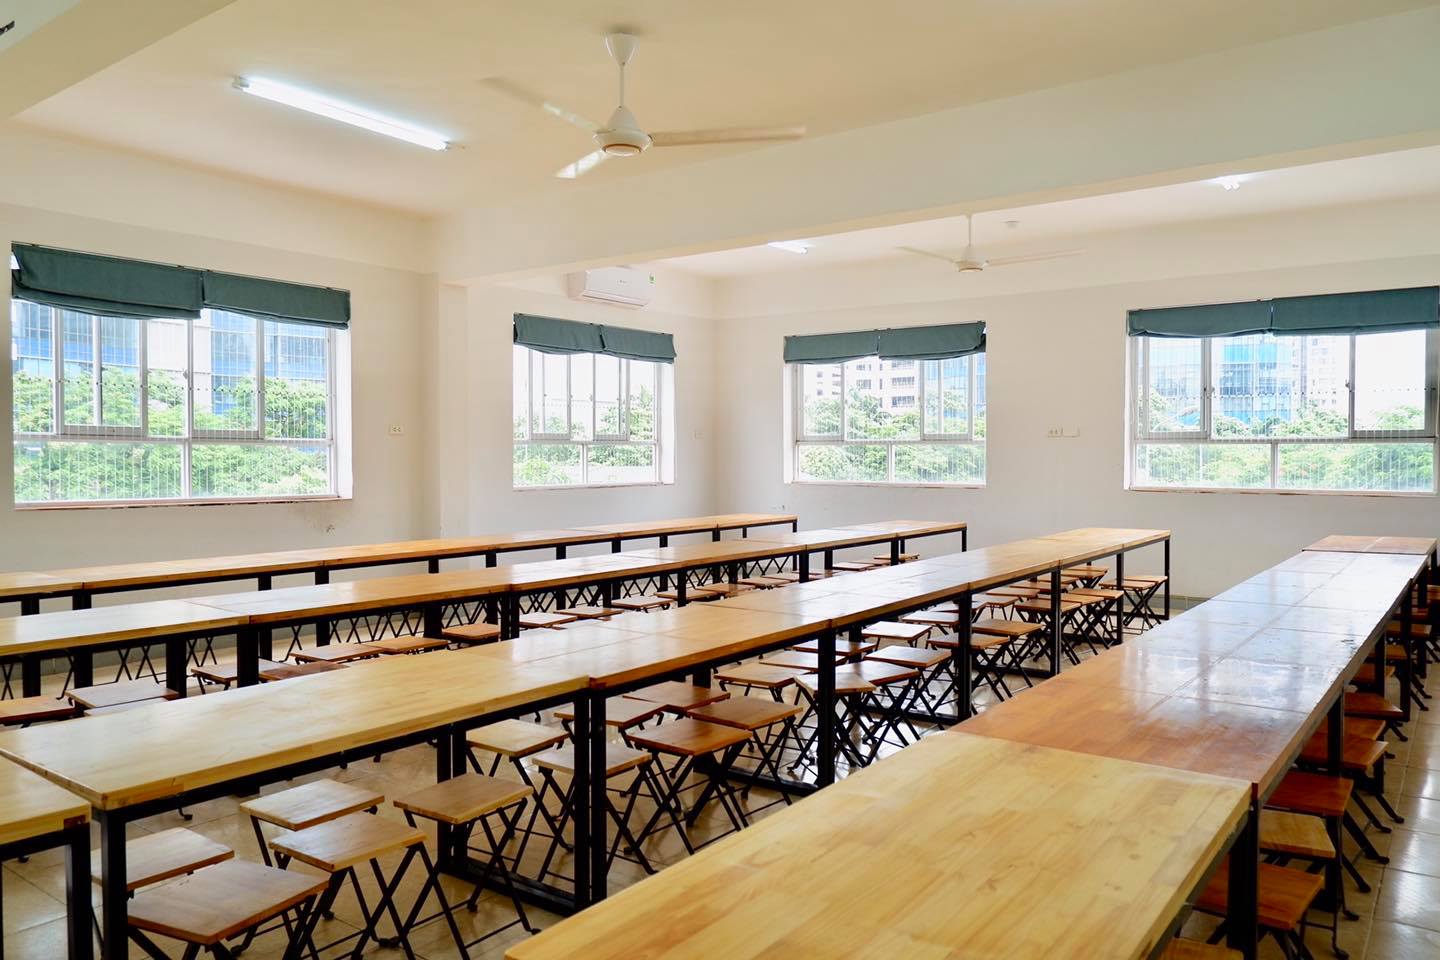 Phụ huynh review ưu, nhược điểm của trường tiểu học NHỎ MÀ CHẤT ngay nội đô Hà Nội: Toàn trường chỉ hơn 500 học sinh, học phí siêu hợp lý - Ảnh 3.